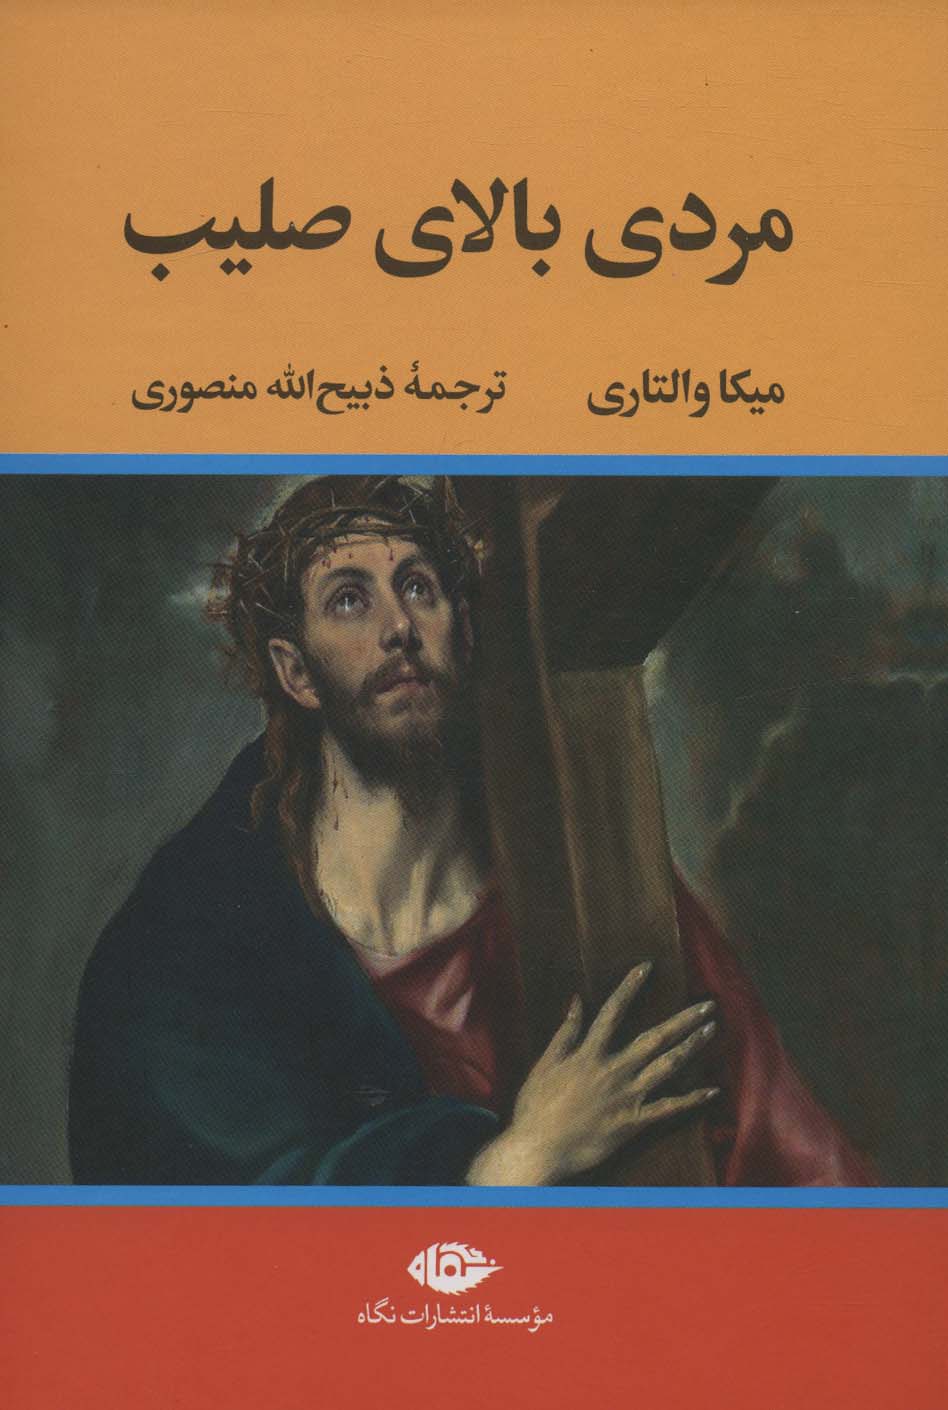 کتاب مردی بالای صلیب